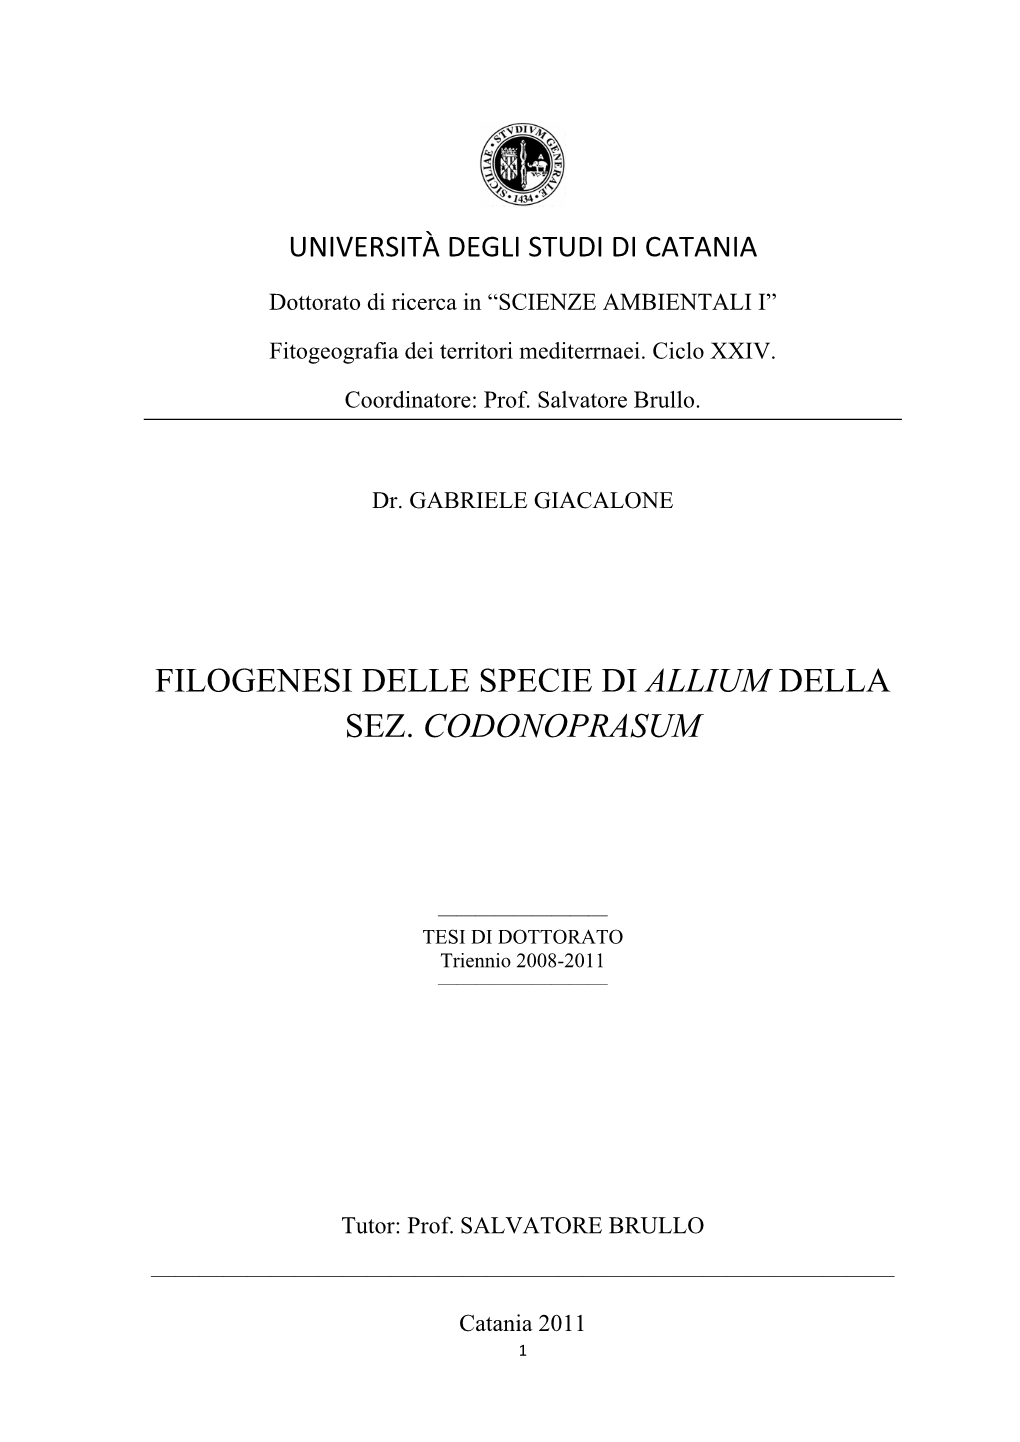 Filogenesi Delle Specie Di Allium Della Sez